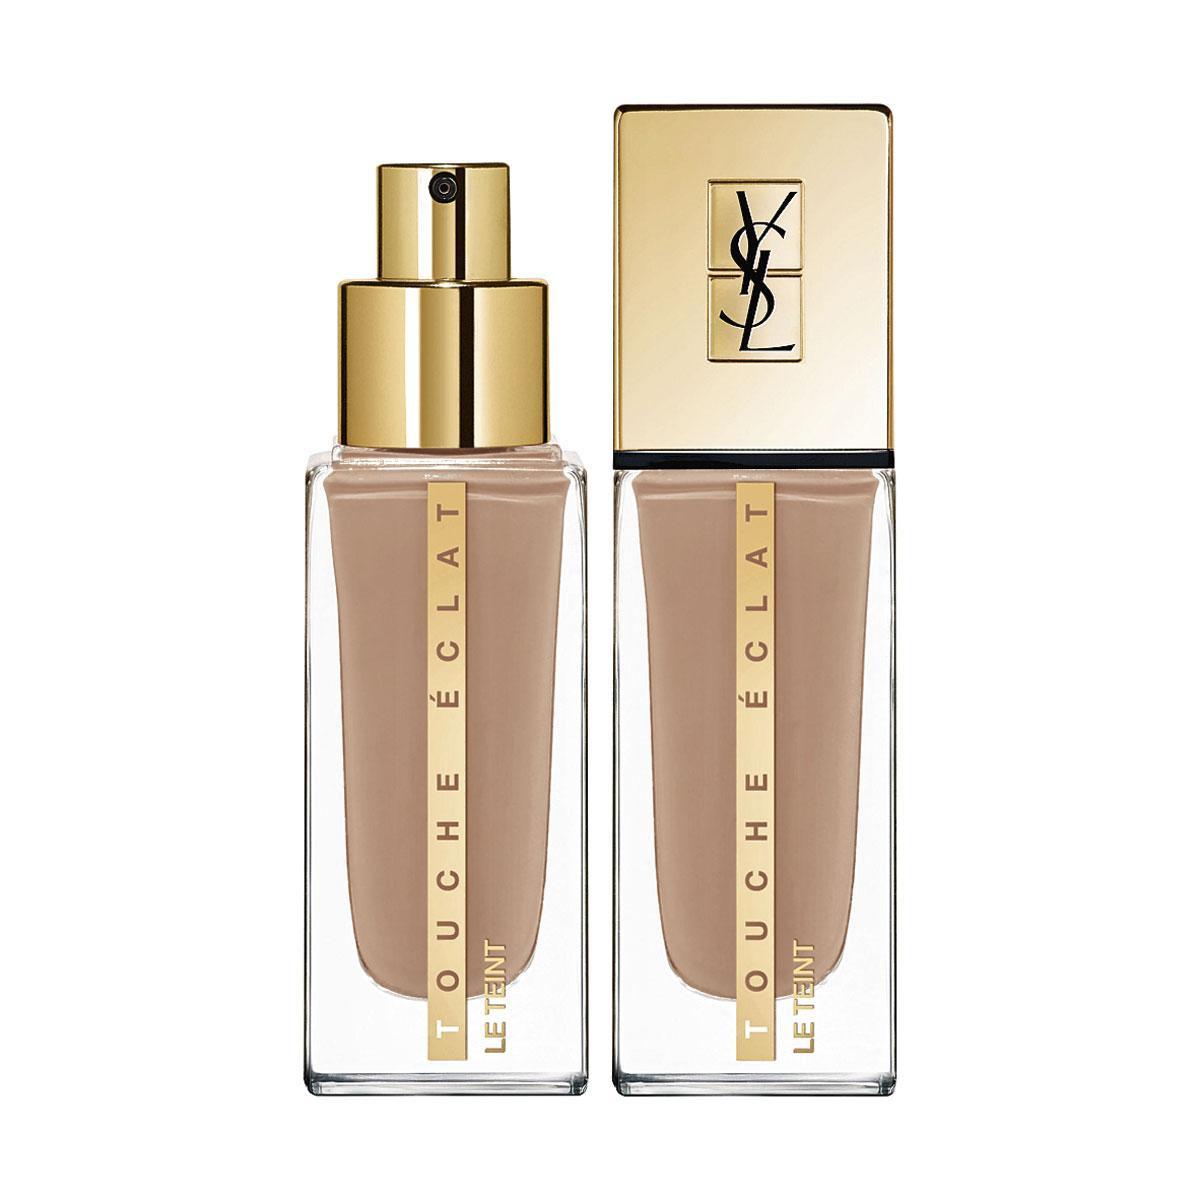 Lumière! Eclat naturel, couvrance moyenne et hydratation 24 heures pour le nouveau Touche Eclat le Teint d'Yves Saint Laurent (53,70 ? 30 tonalités), en parfumerie.